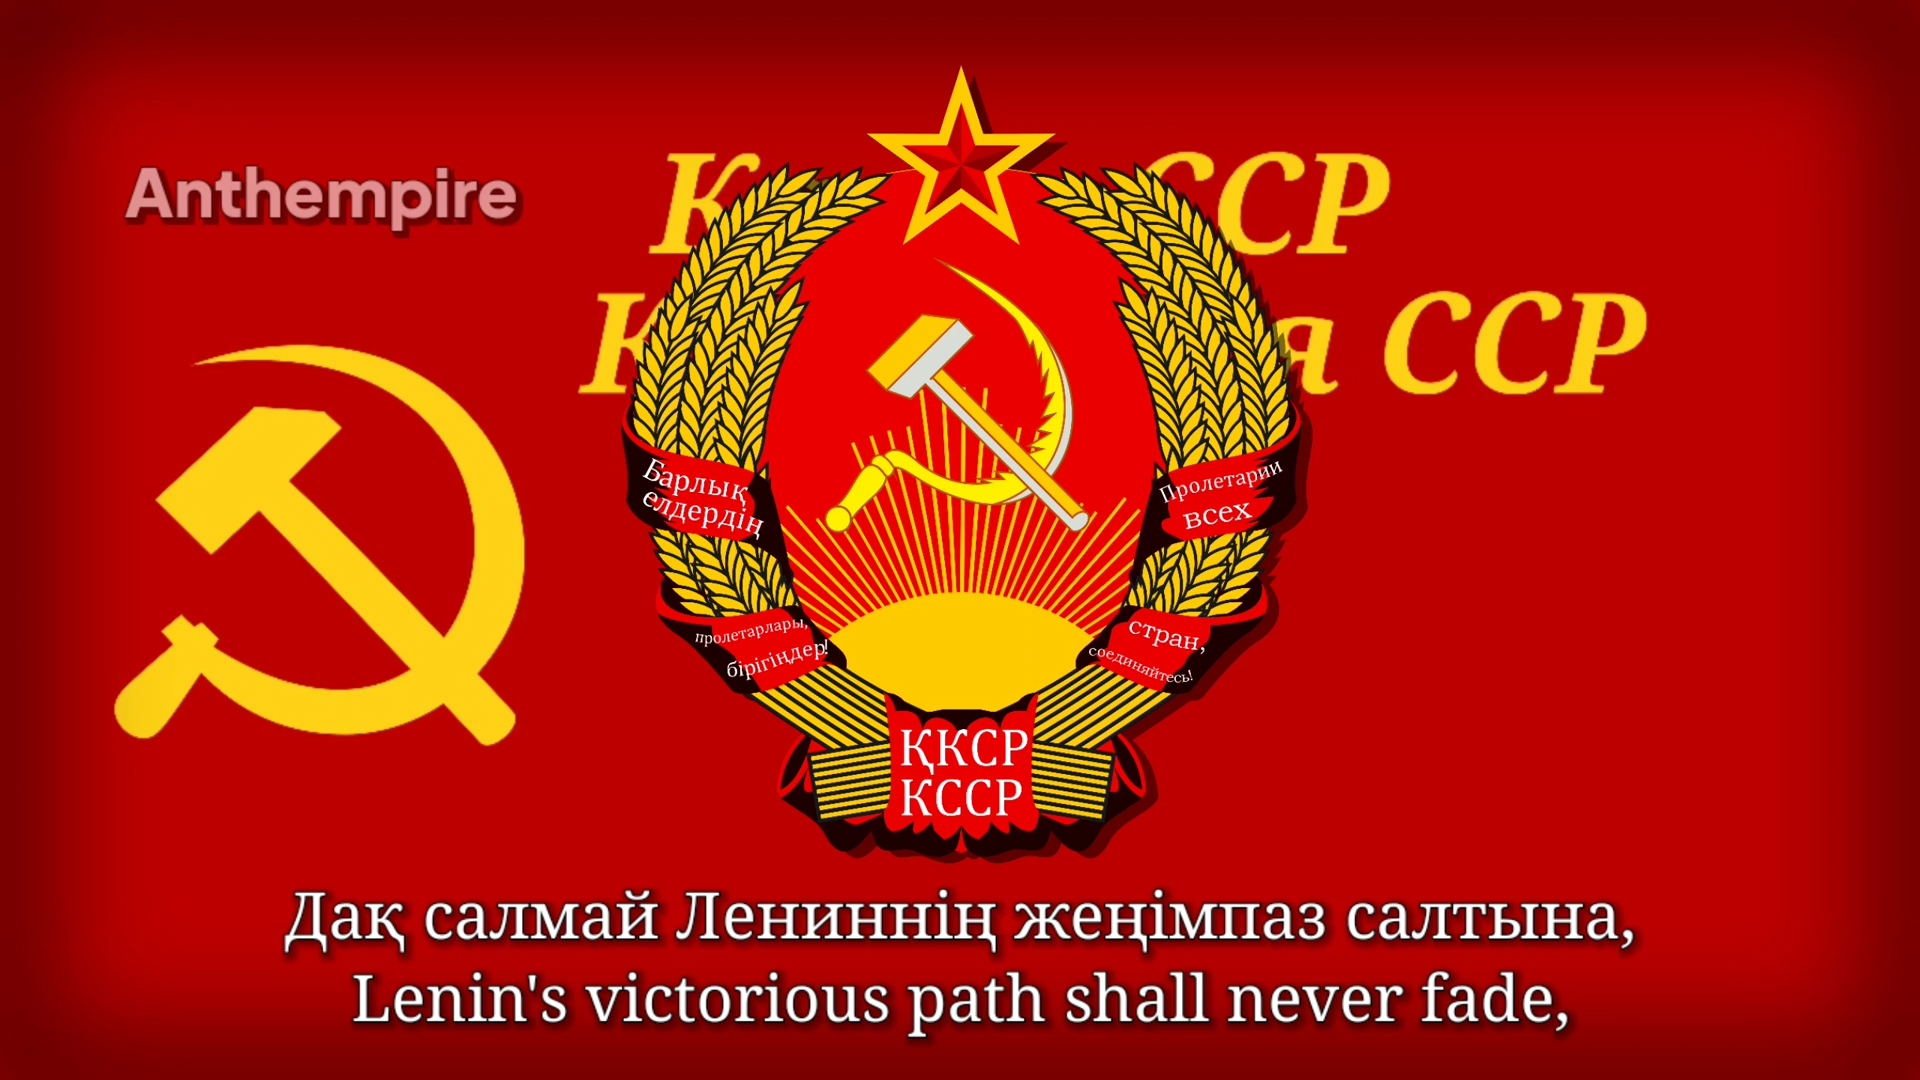 哈萨克苏维埃社会主义共和国歌(斯大林版, 翻唱)